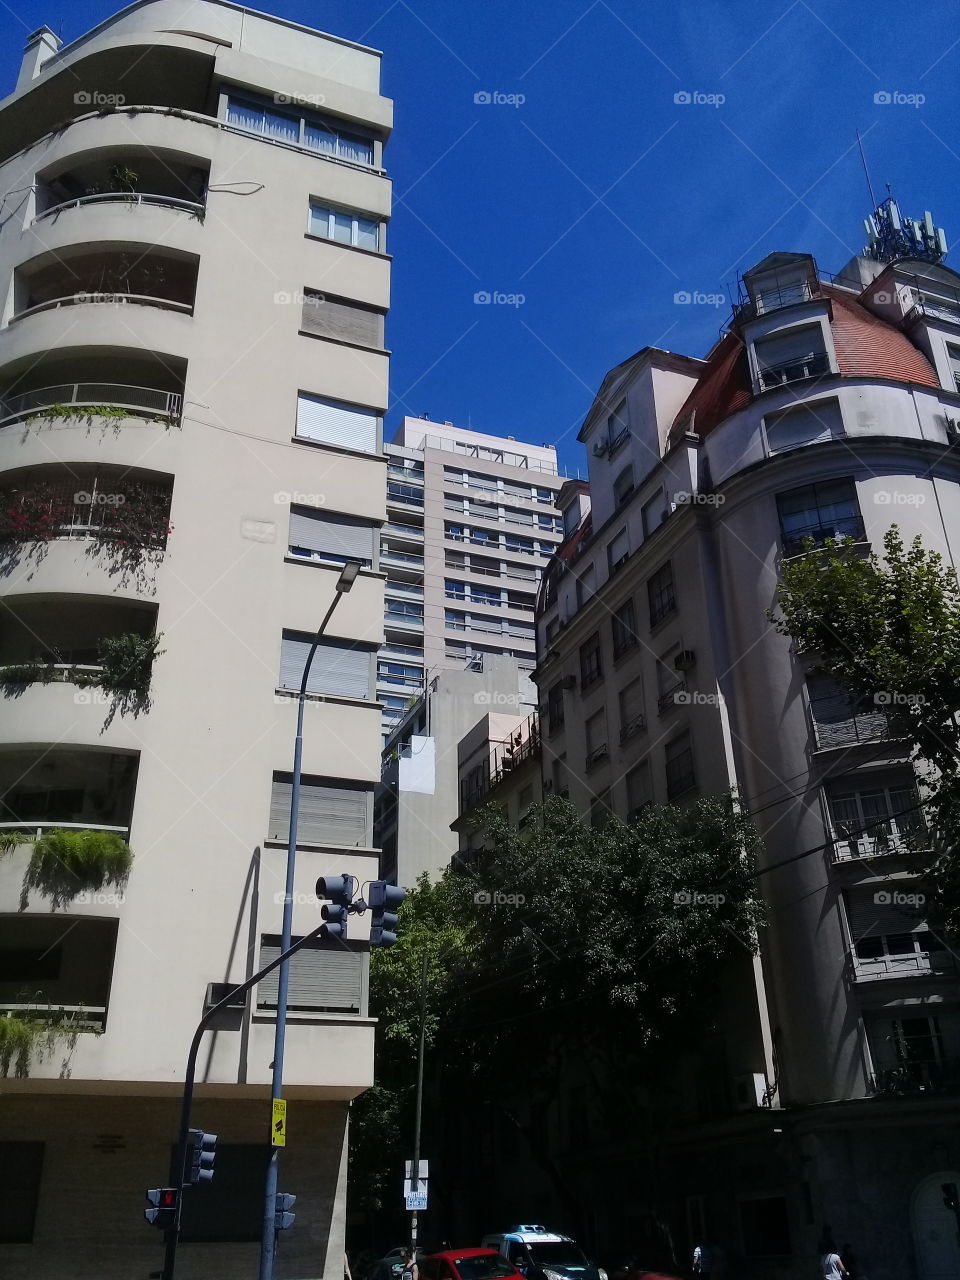 imagen de un conjunto de edificios modernos y antiguos destinados a oficinas y viviendas familiares en una céntrica avenida de la ciudad de Buenos Aires.